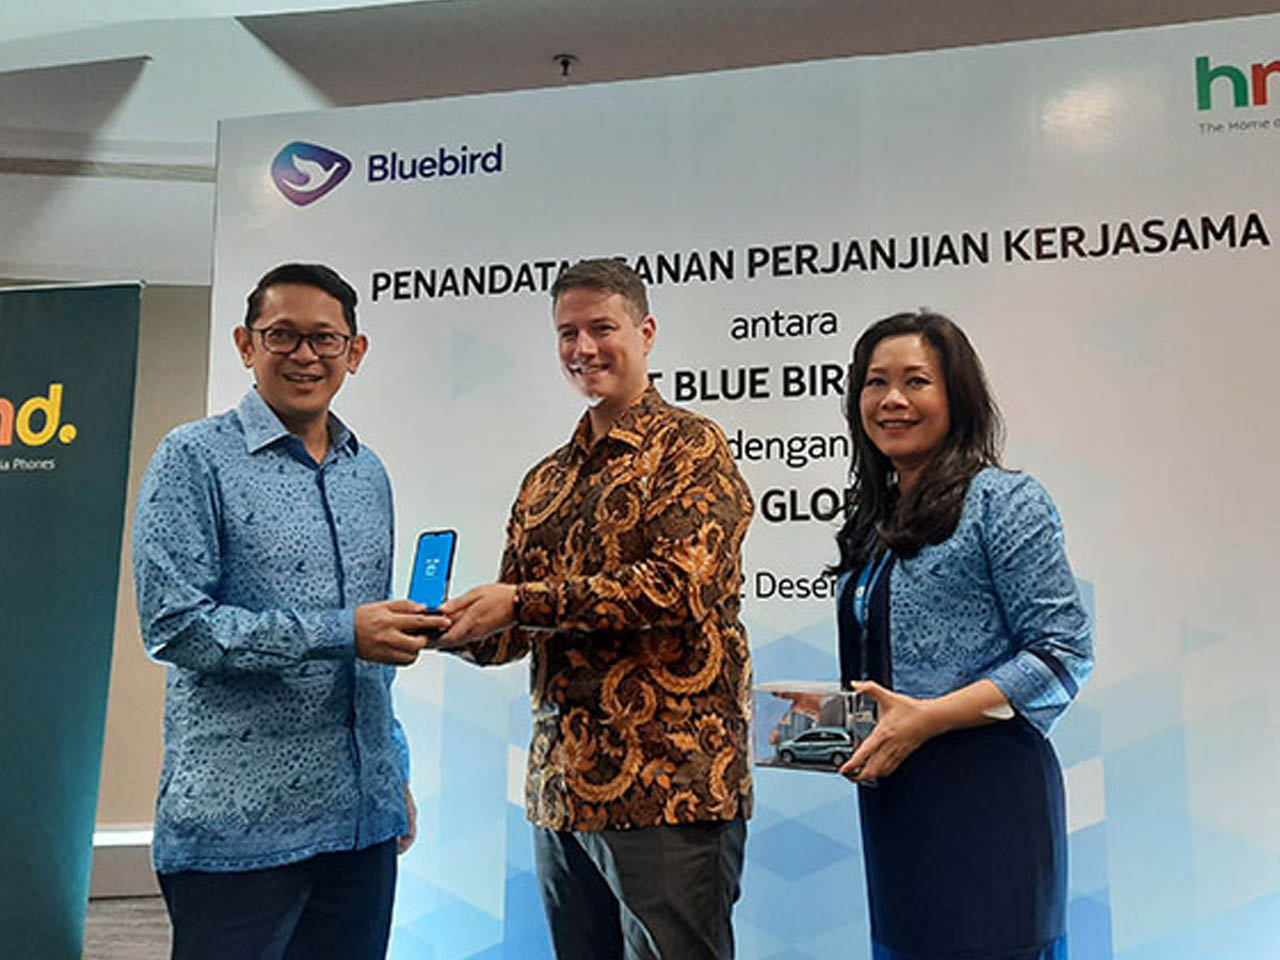 Bluebird Group Berkolaborasi dengan HMD Global Hadirkan Pengalaman Mobile Terkini Bagi Para Pengemudi dan Konsumen dengan Smartphone Nokia